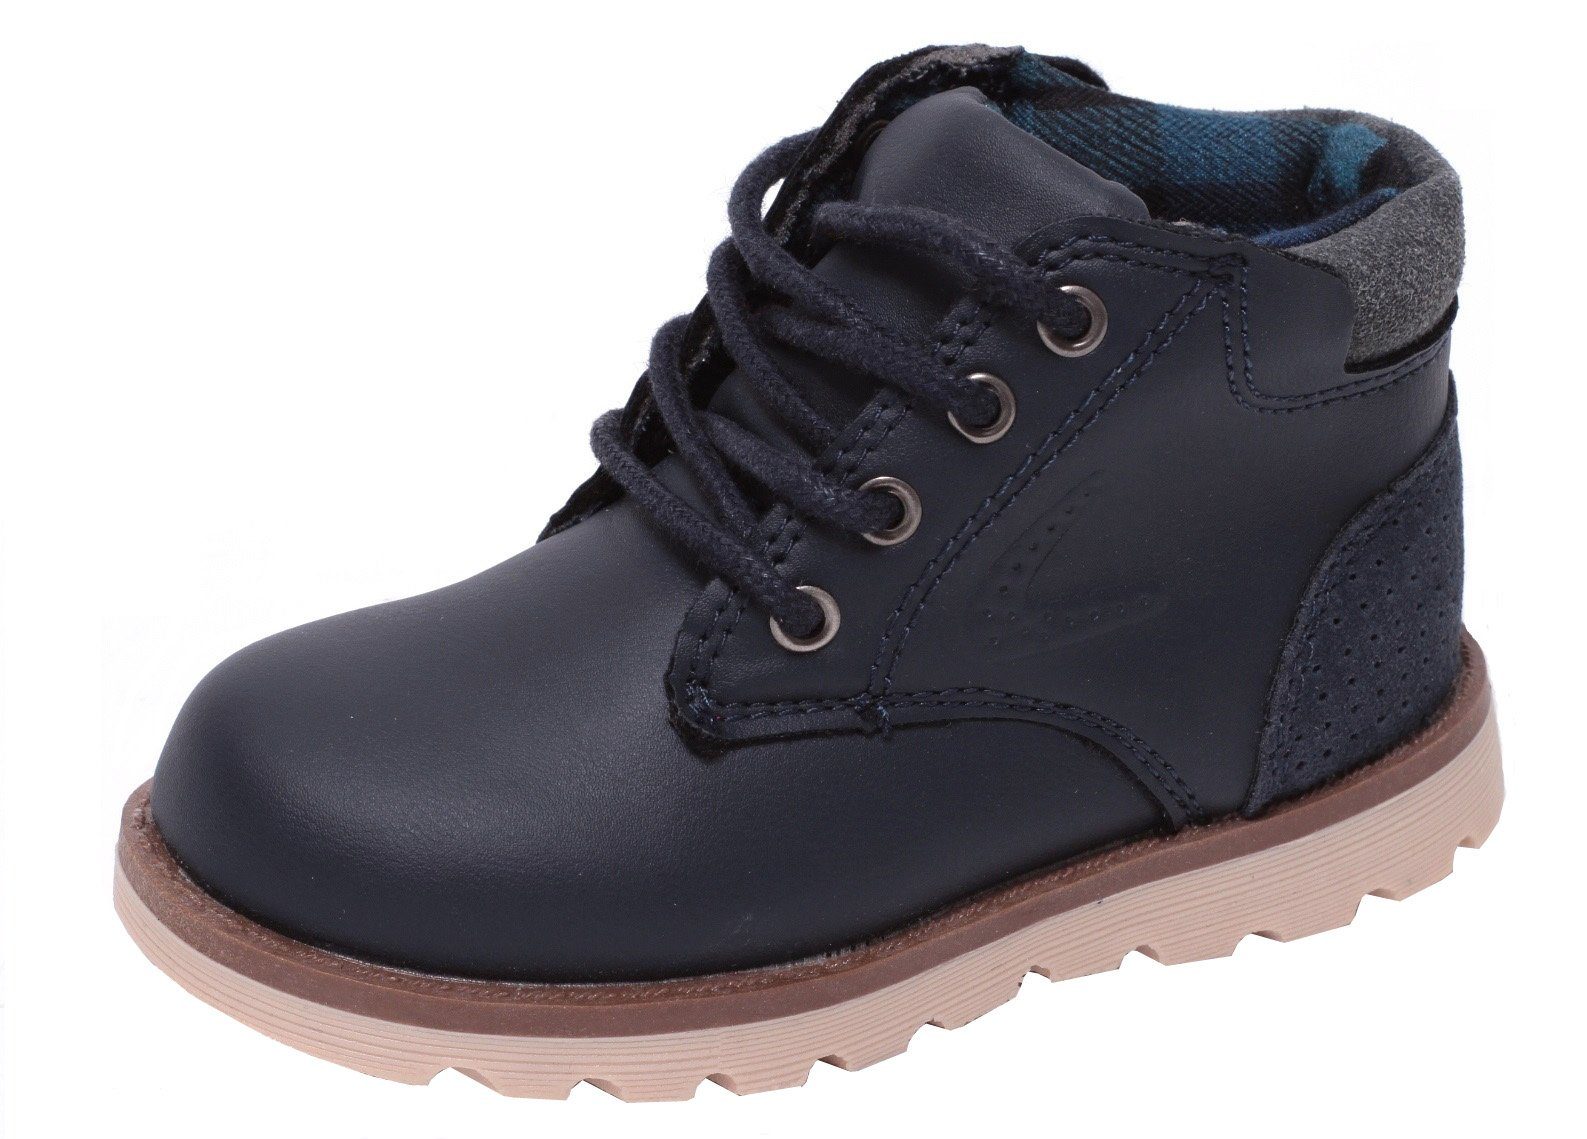 Zapato Schnürboots Jungen Schnürschuhe Schnürstiefel Boots High Cut Stiefel  Stiefelette Schuhe blau